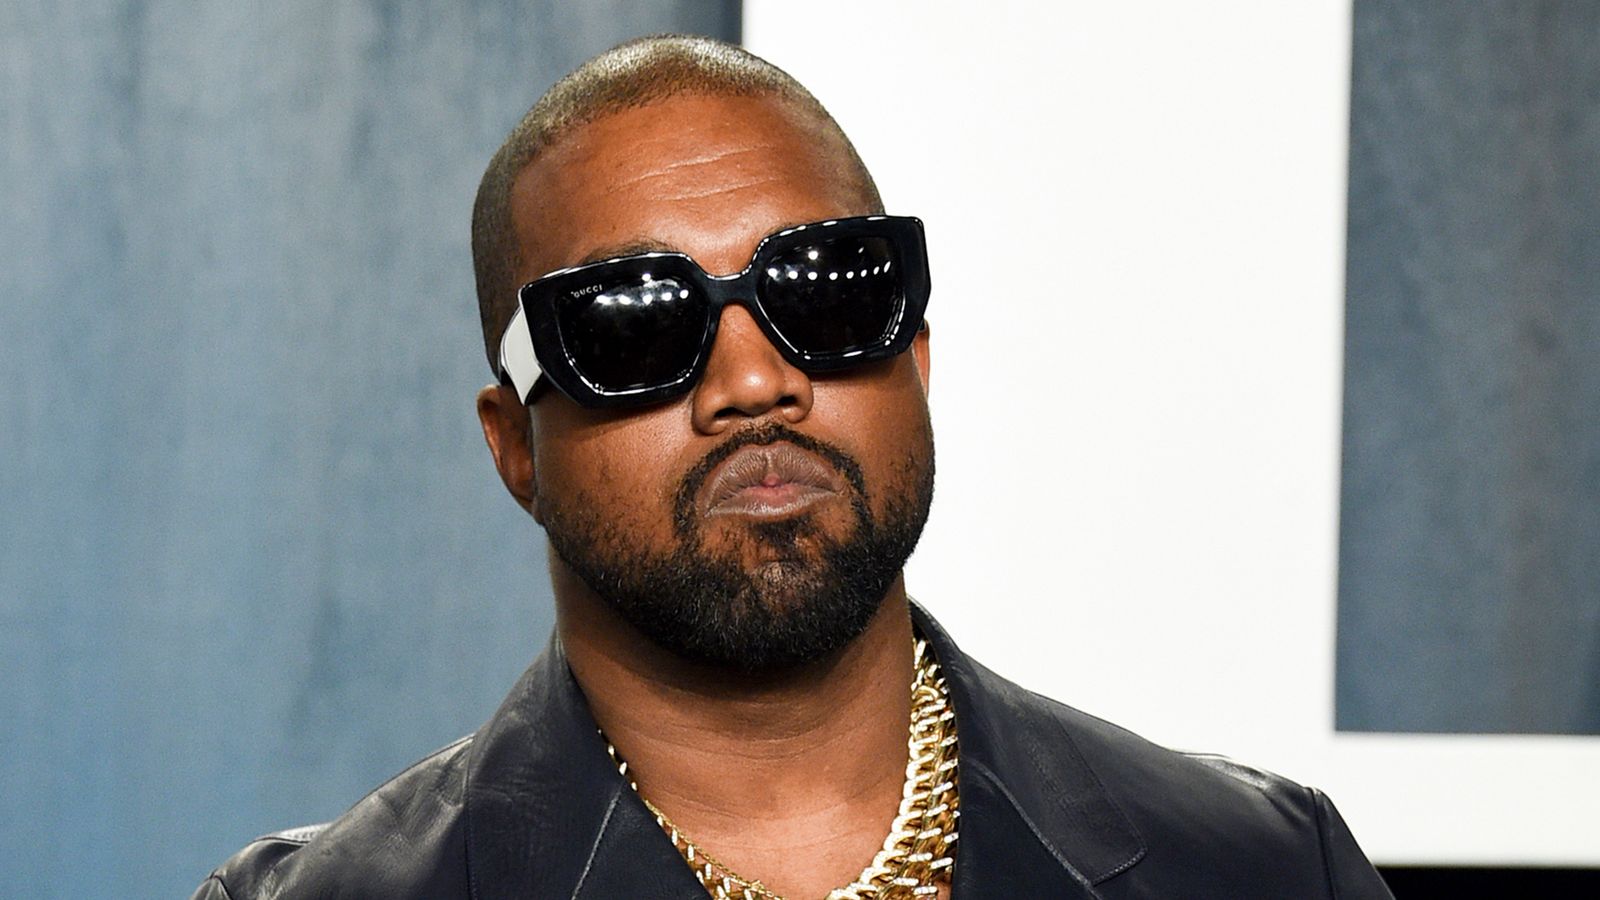 Kanye West bisa ditolak masuk ke Australia |  Berita Ent & Seni